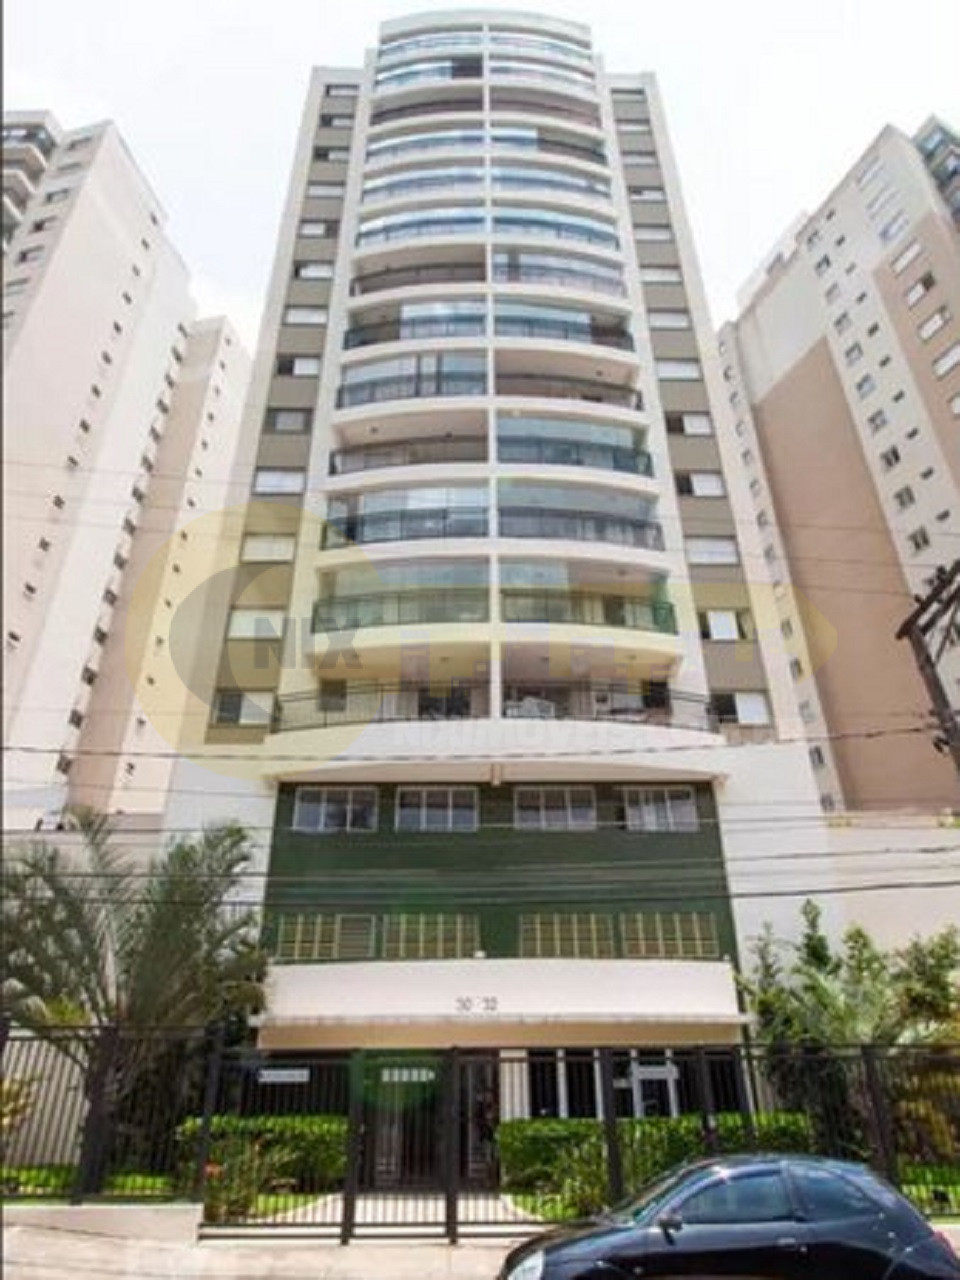 Aluga apartamento Vila Gomes USP Metro Butanta ao lado Pç Elis Regina. 60m² 2 quartos, suíte, varanda. Piscina, academia, aceita pets. Segurança 24 horas!